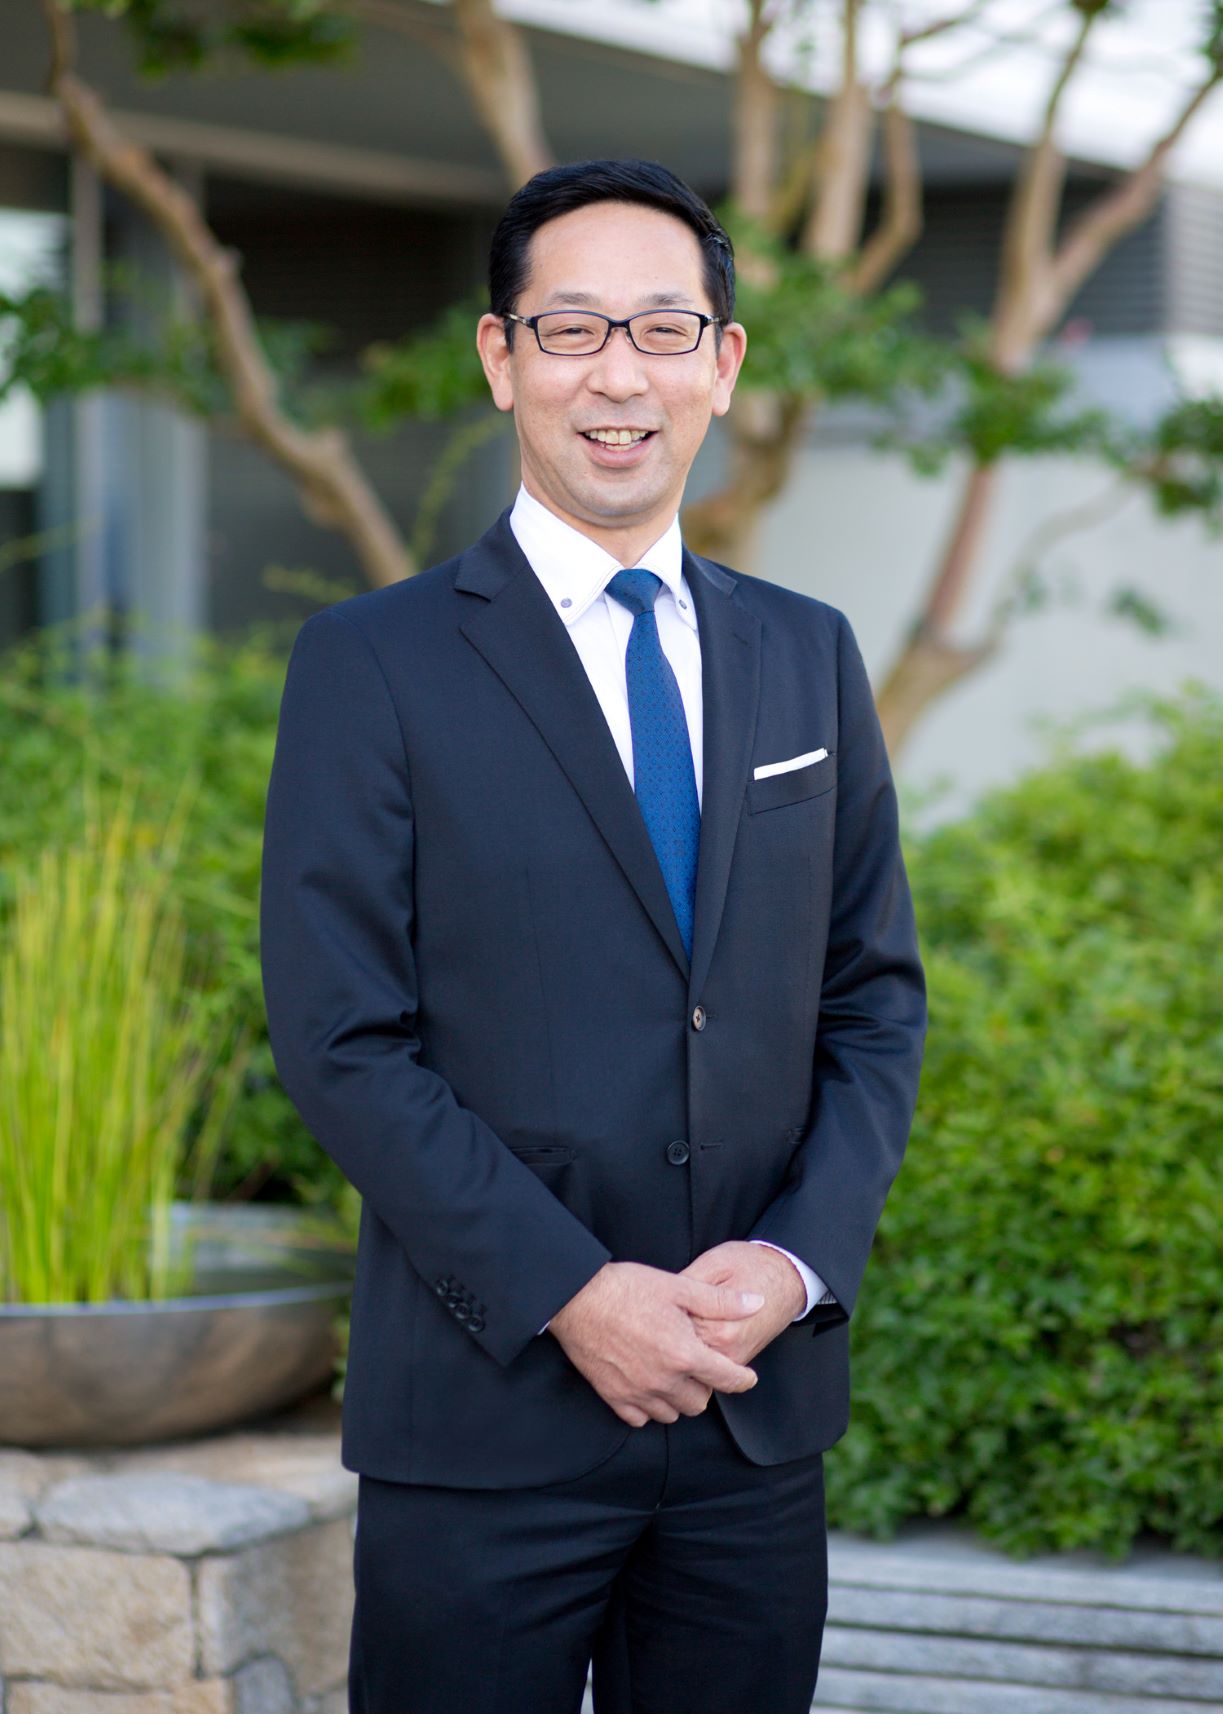 ข่าวโรงแรม, ที่พัก - Centara appoints General Manager for Centara Grand Hotel Osaka Opening in July 2023